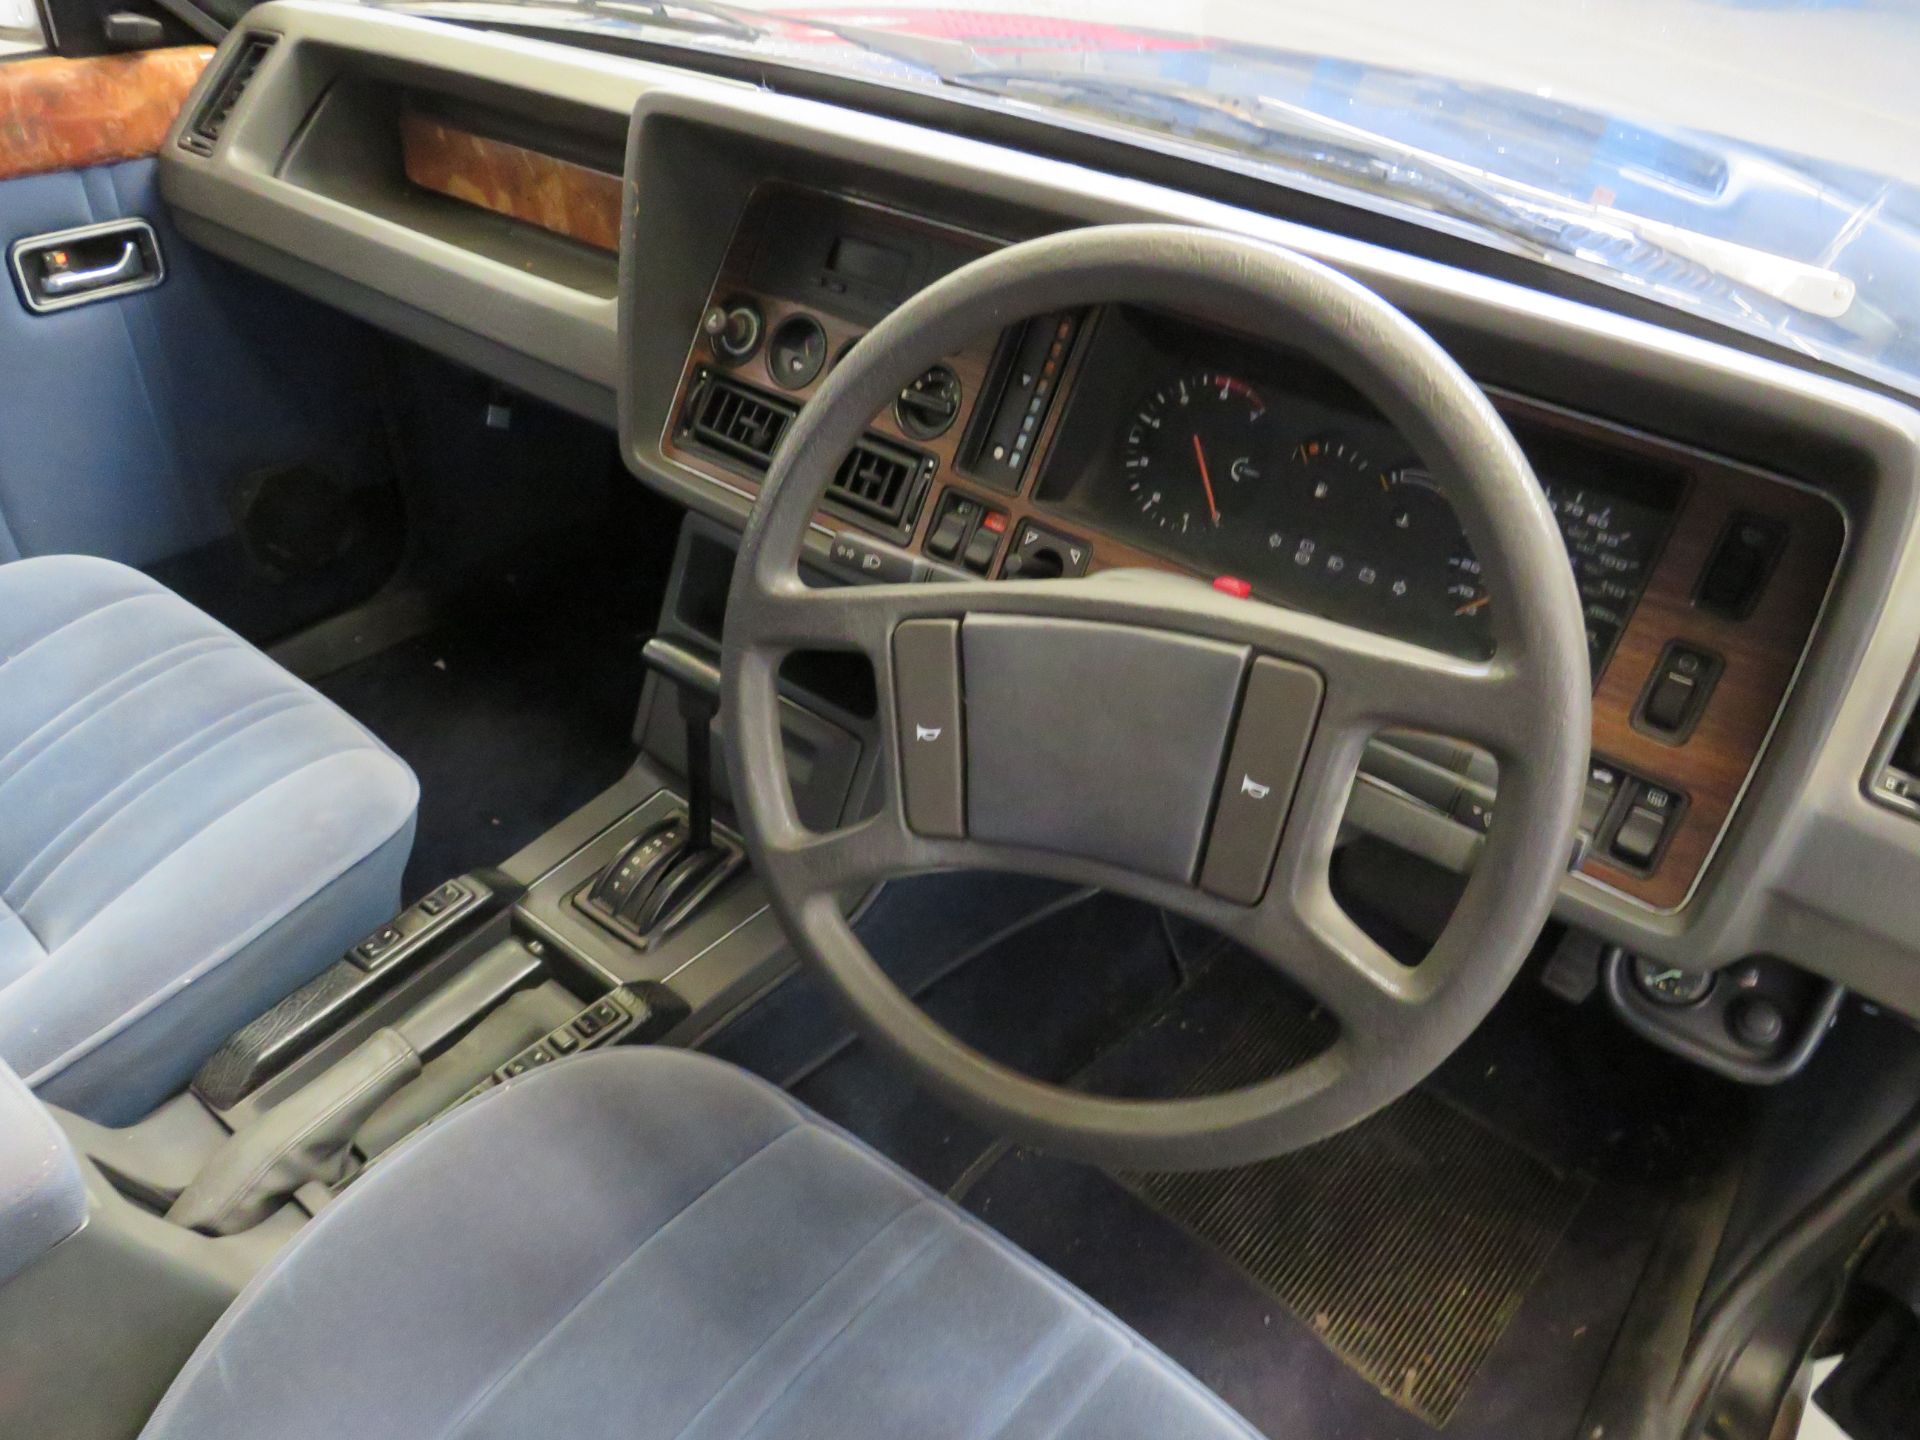 1985 Ford Granada Grosvenor Limousine Auto - 2792cc - Image 10 of 17